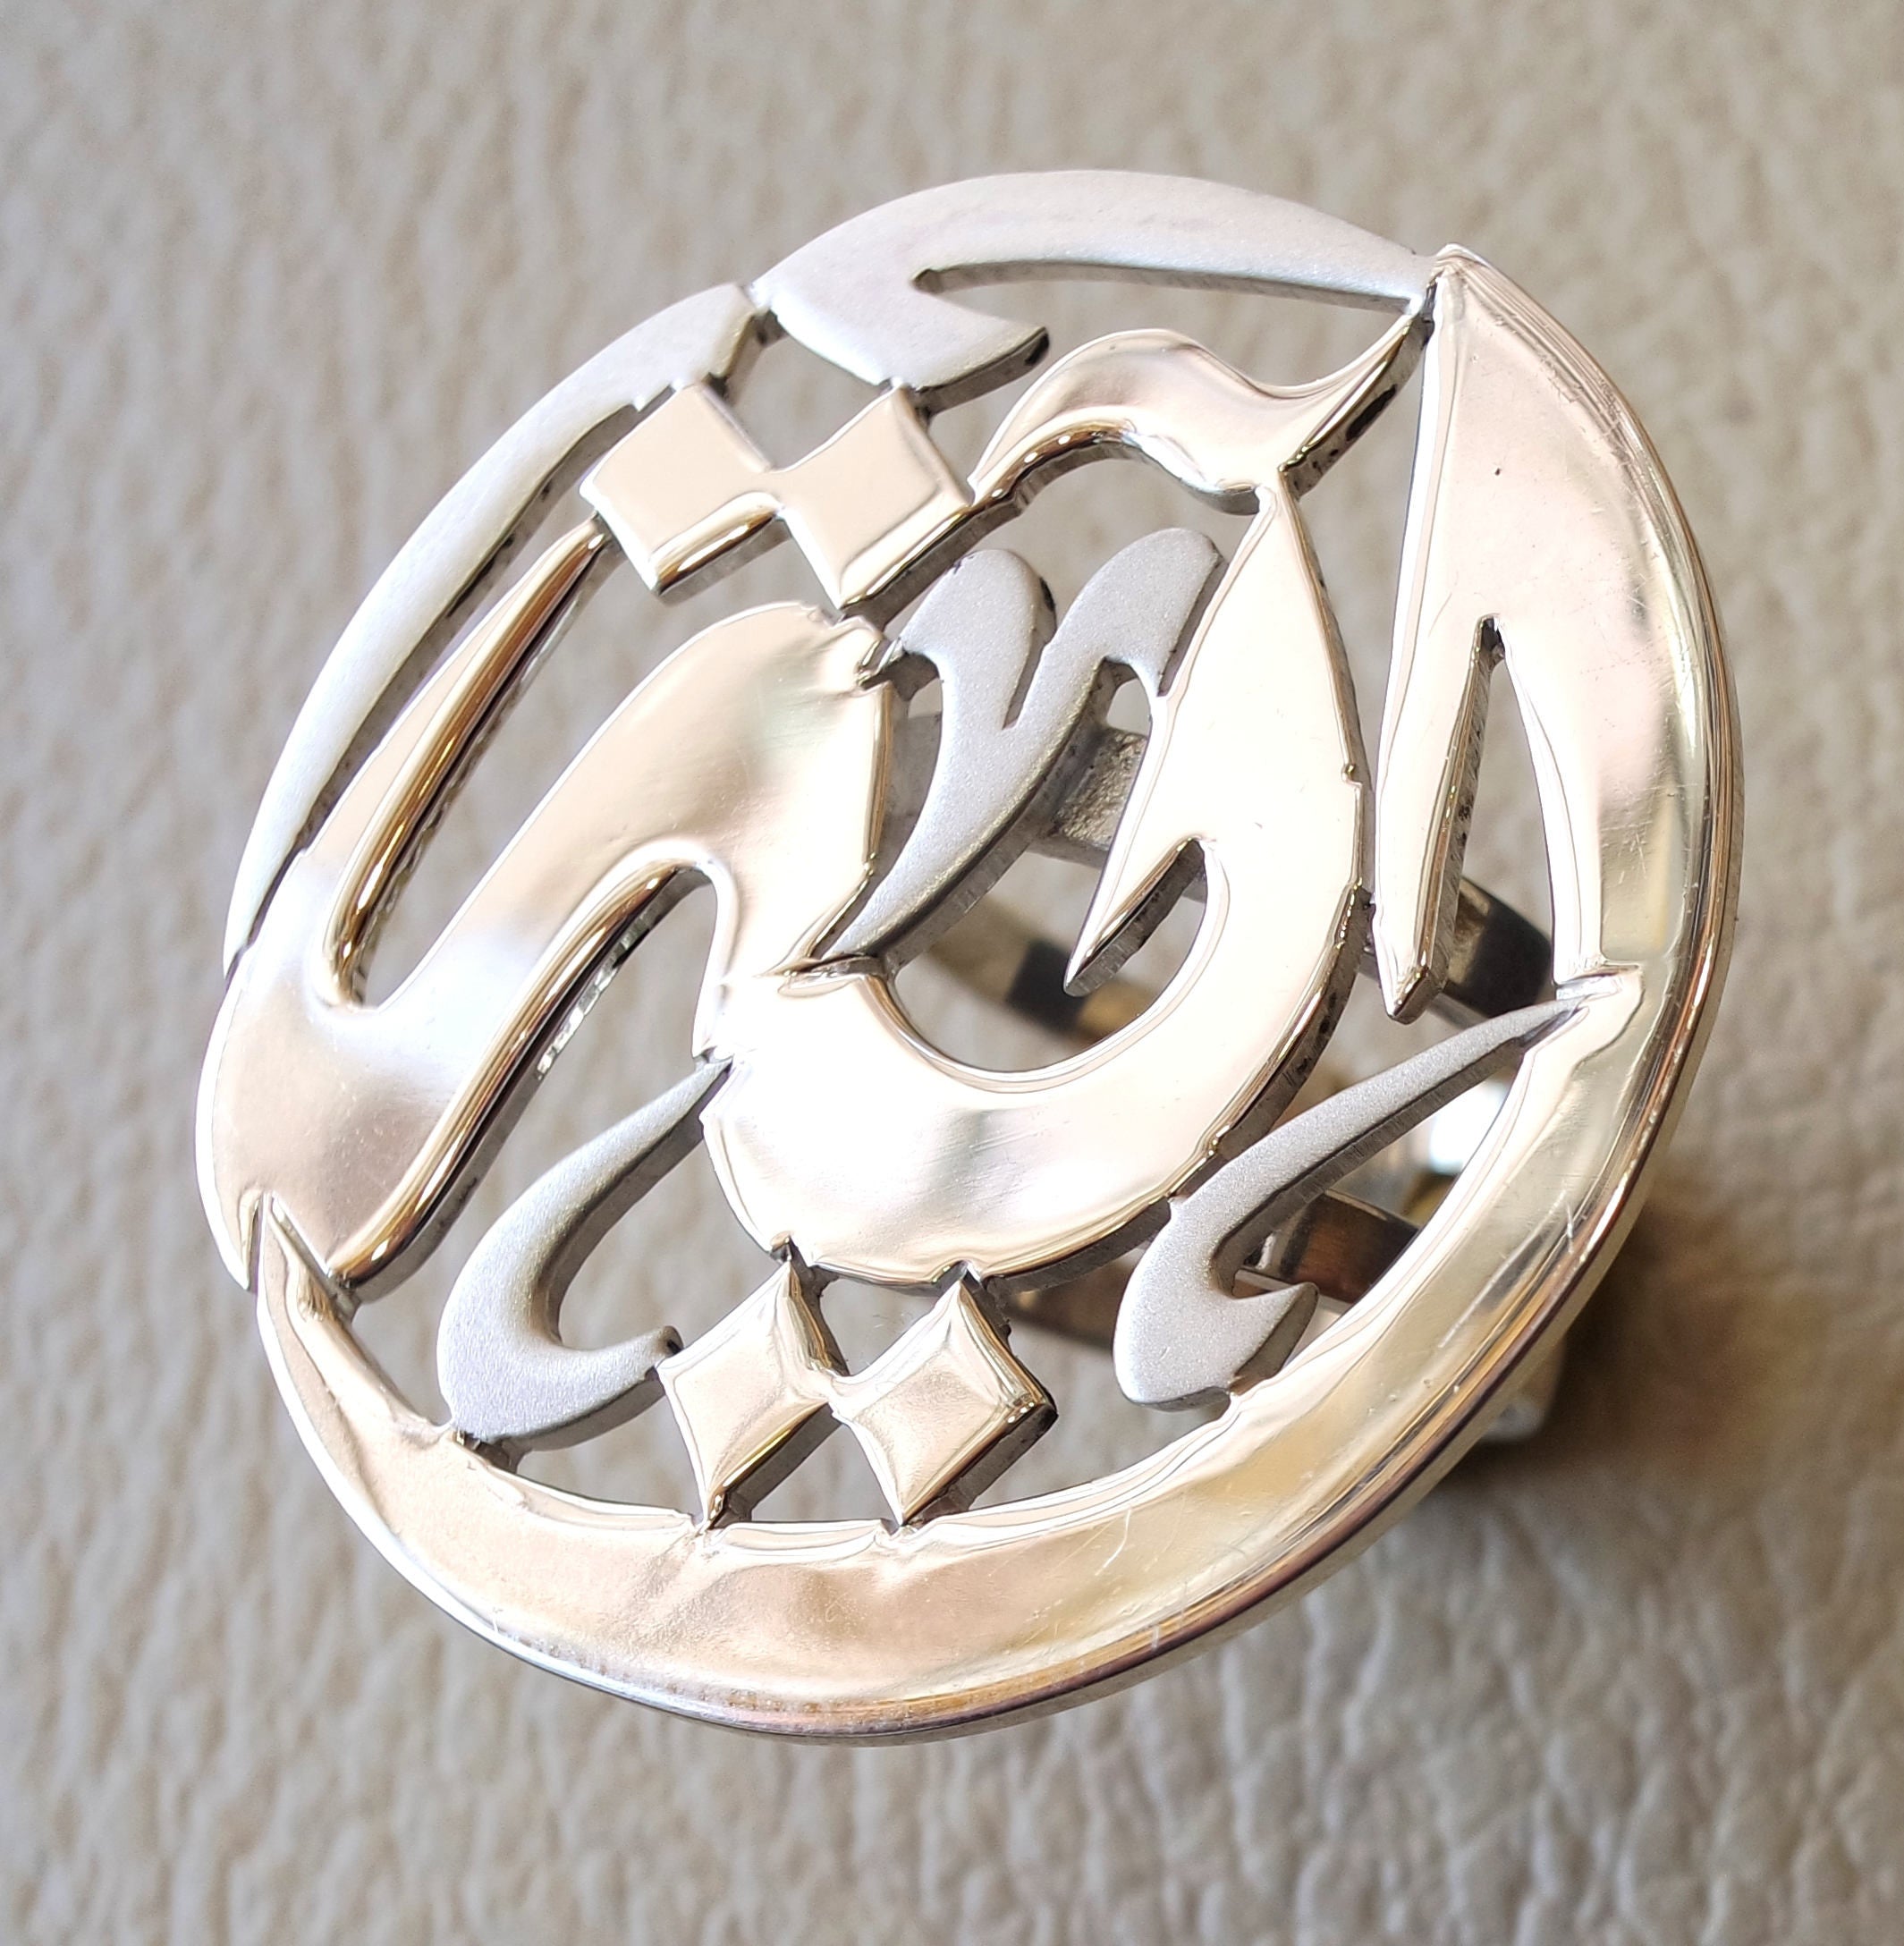 اسم الخط العربي المخصص جولة مزدوجة عرقوب الفضة الإسترليني 925 مصممه لتناسب جميع الاحجام المجوهرات ذات جوده عاليه